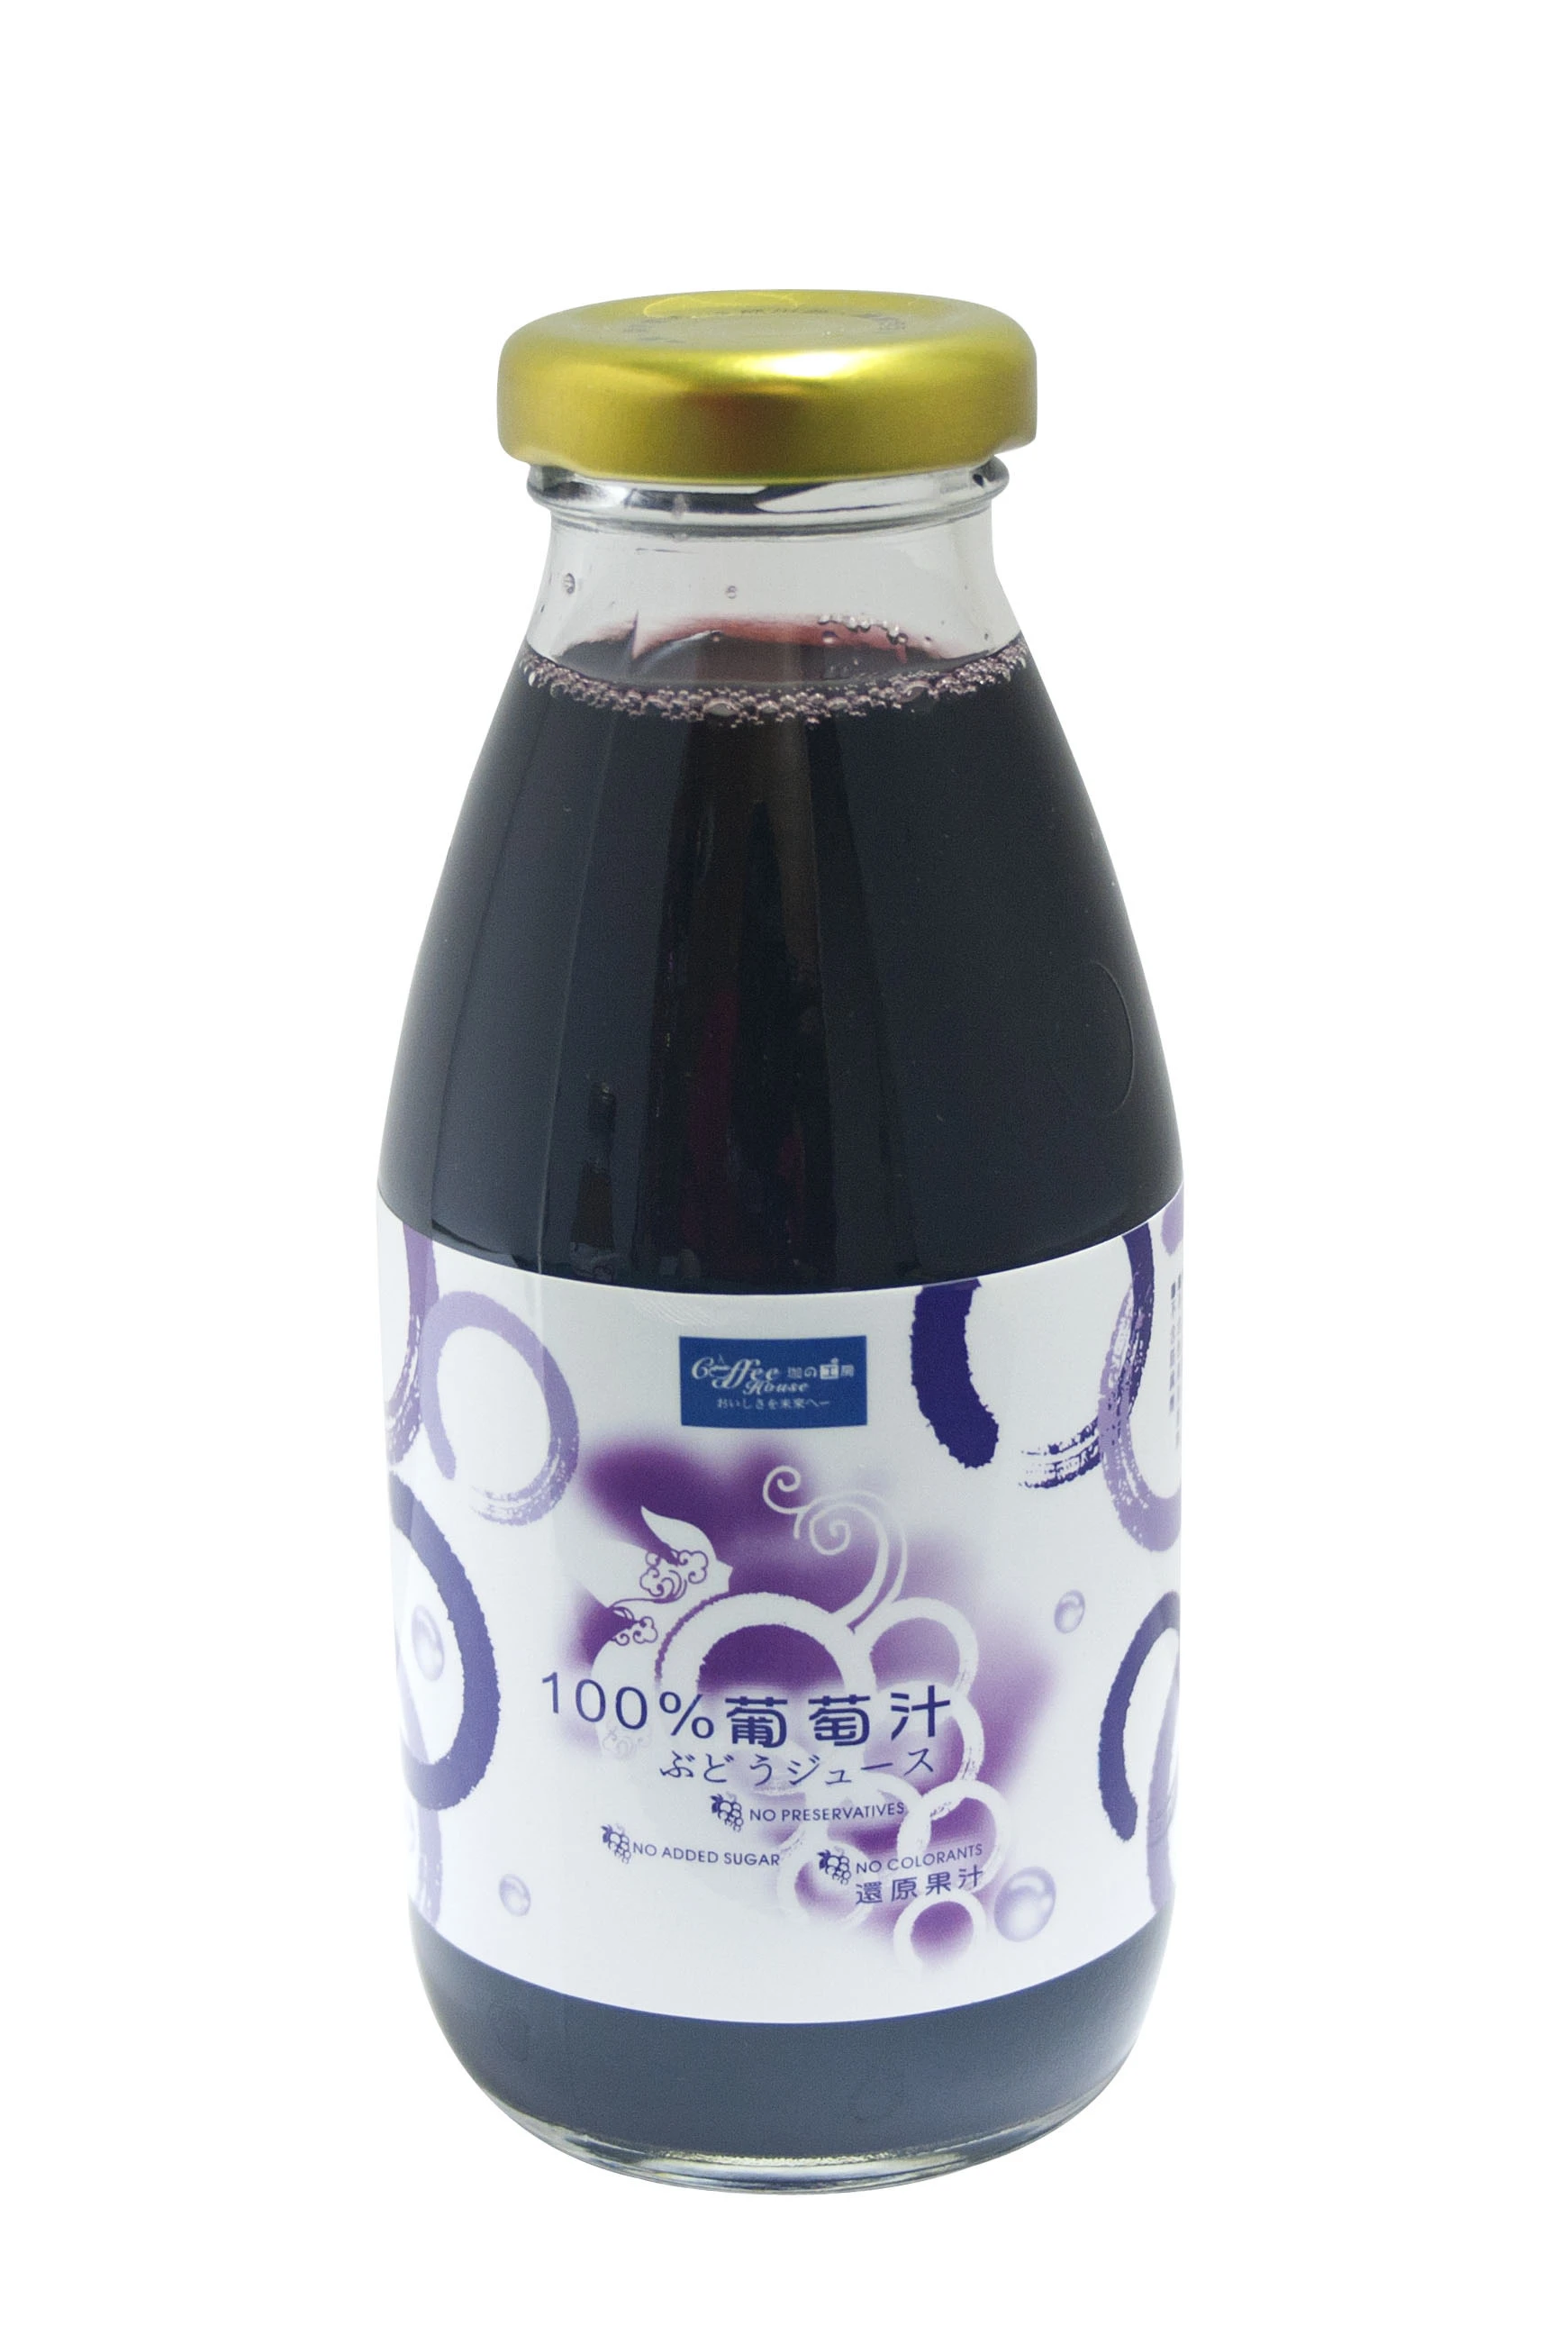 100%葡萄汁(100%Grape Juice)